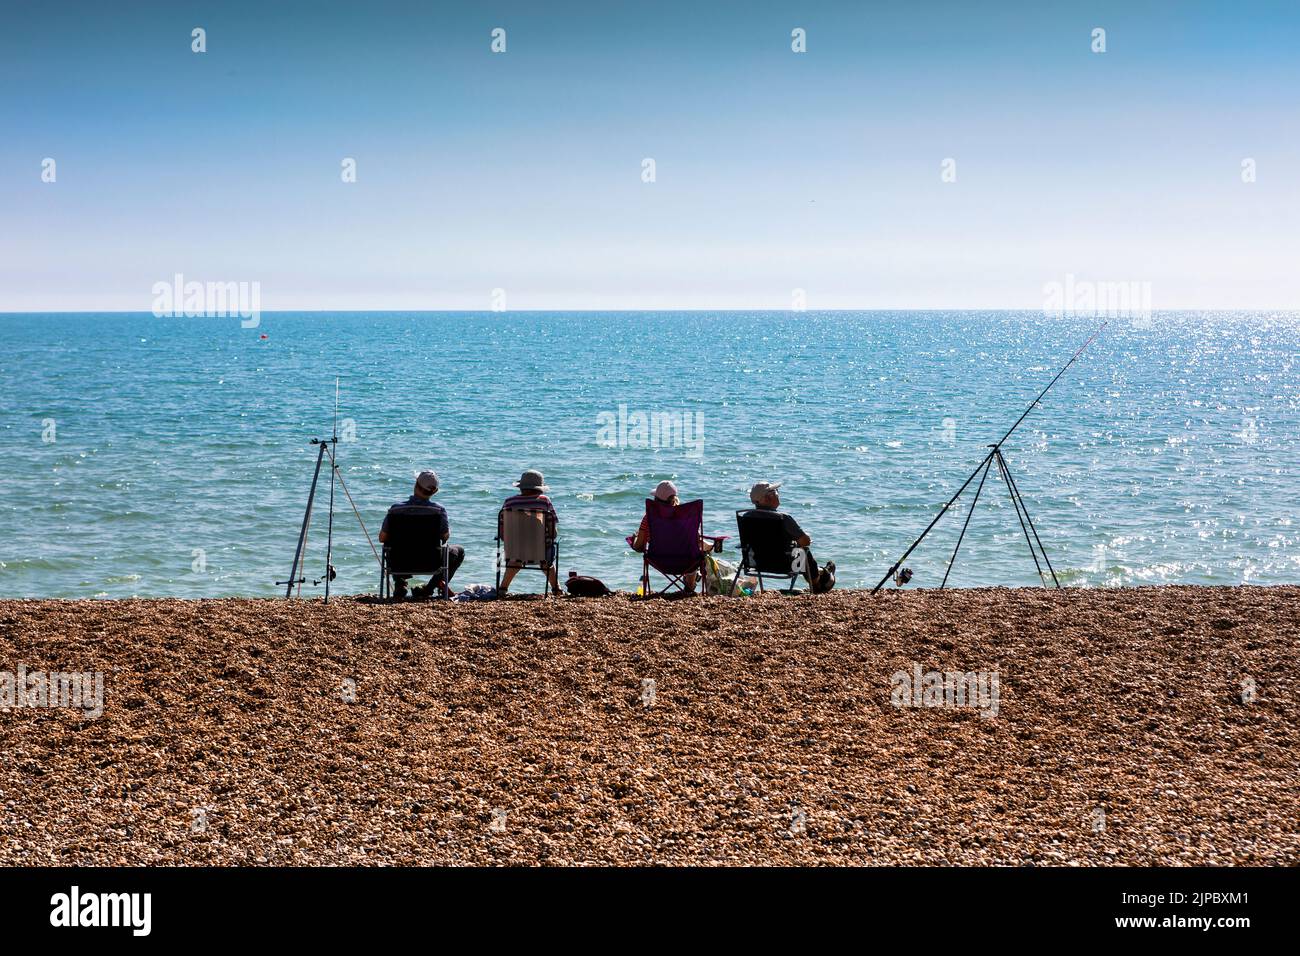 Cuatro pescadores sentados en una playa de guijarros junto a un mar azul en silueta Foto de stock